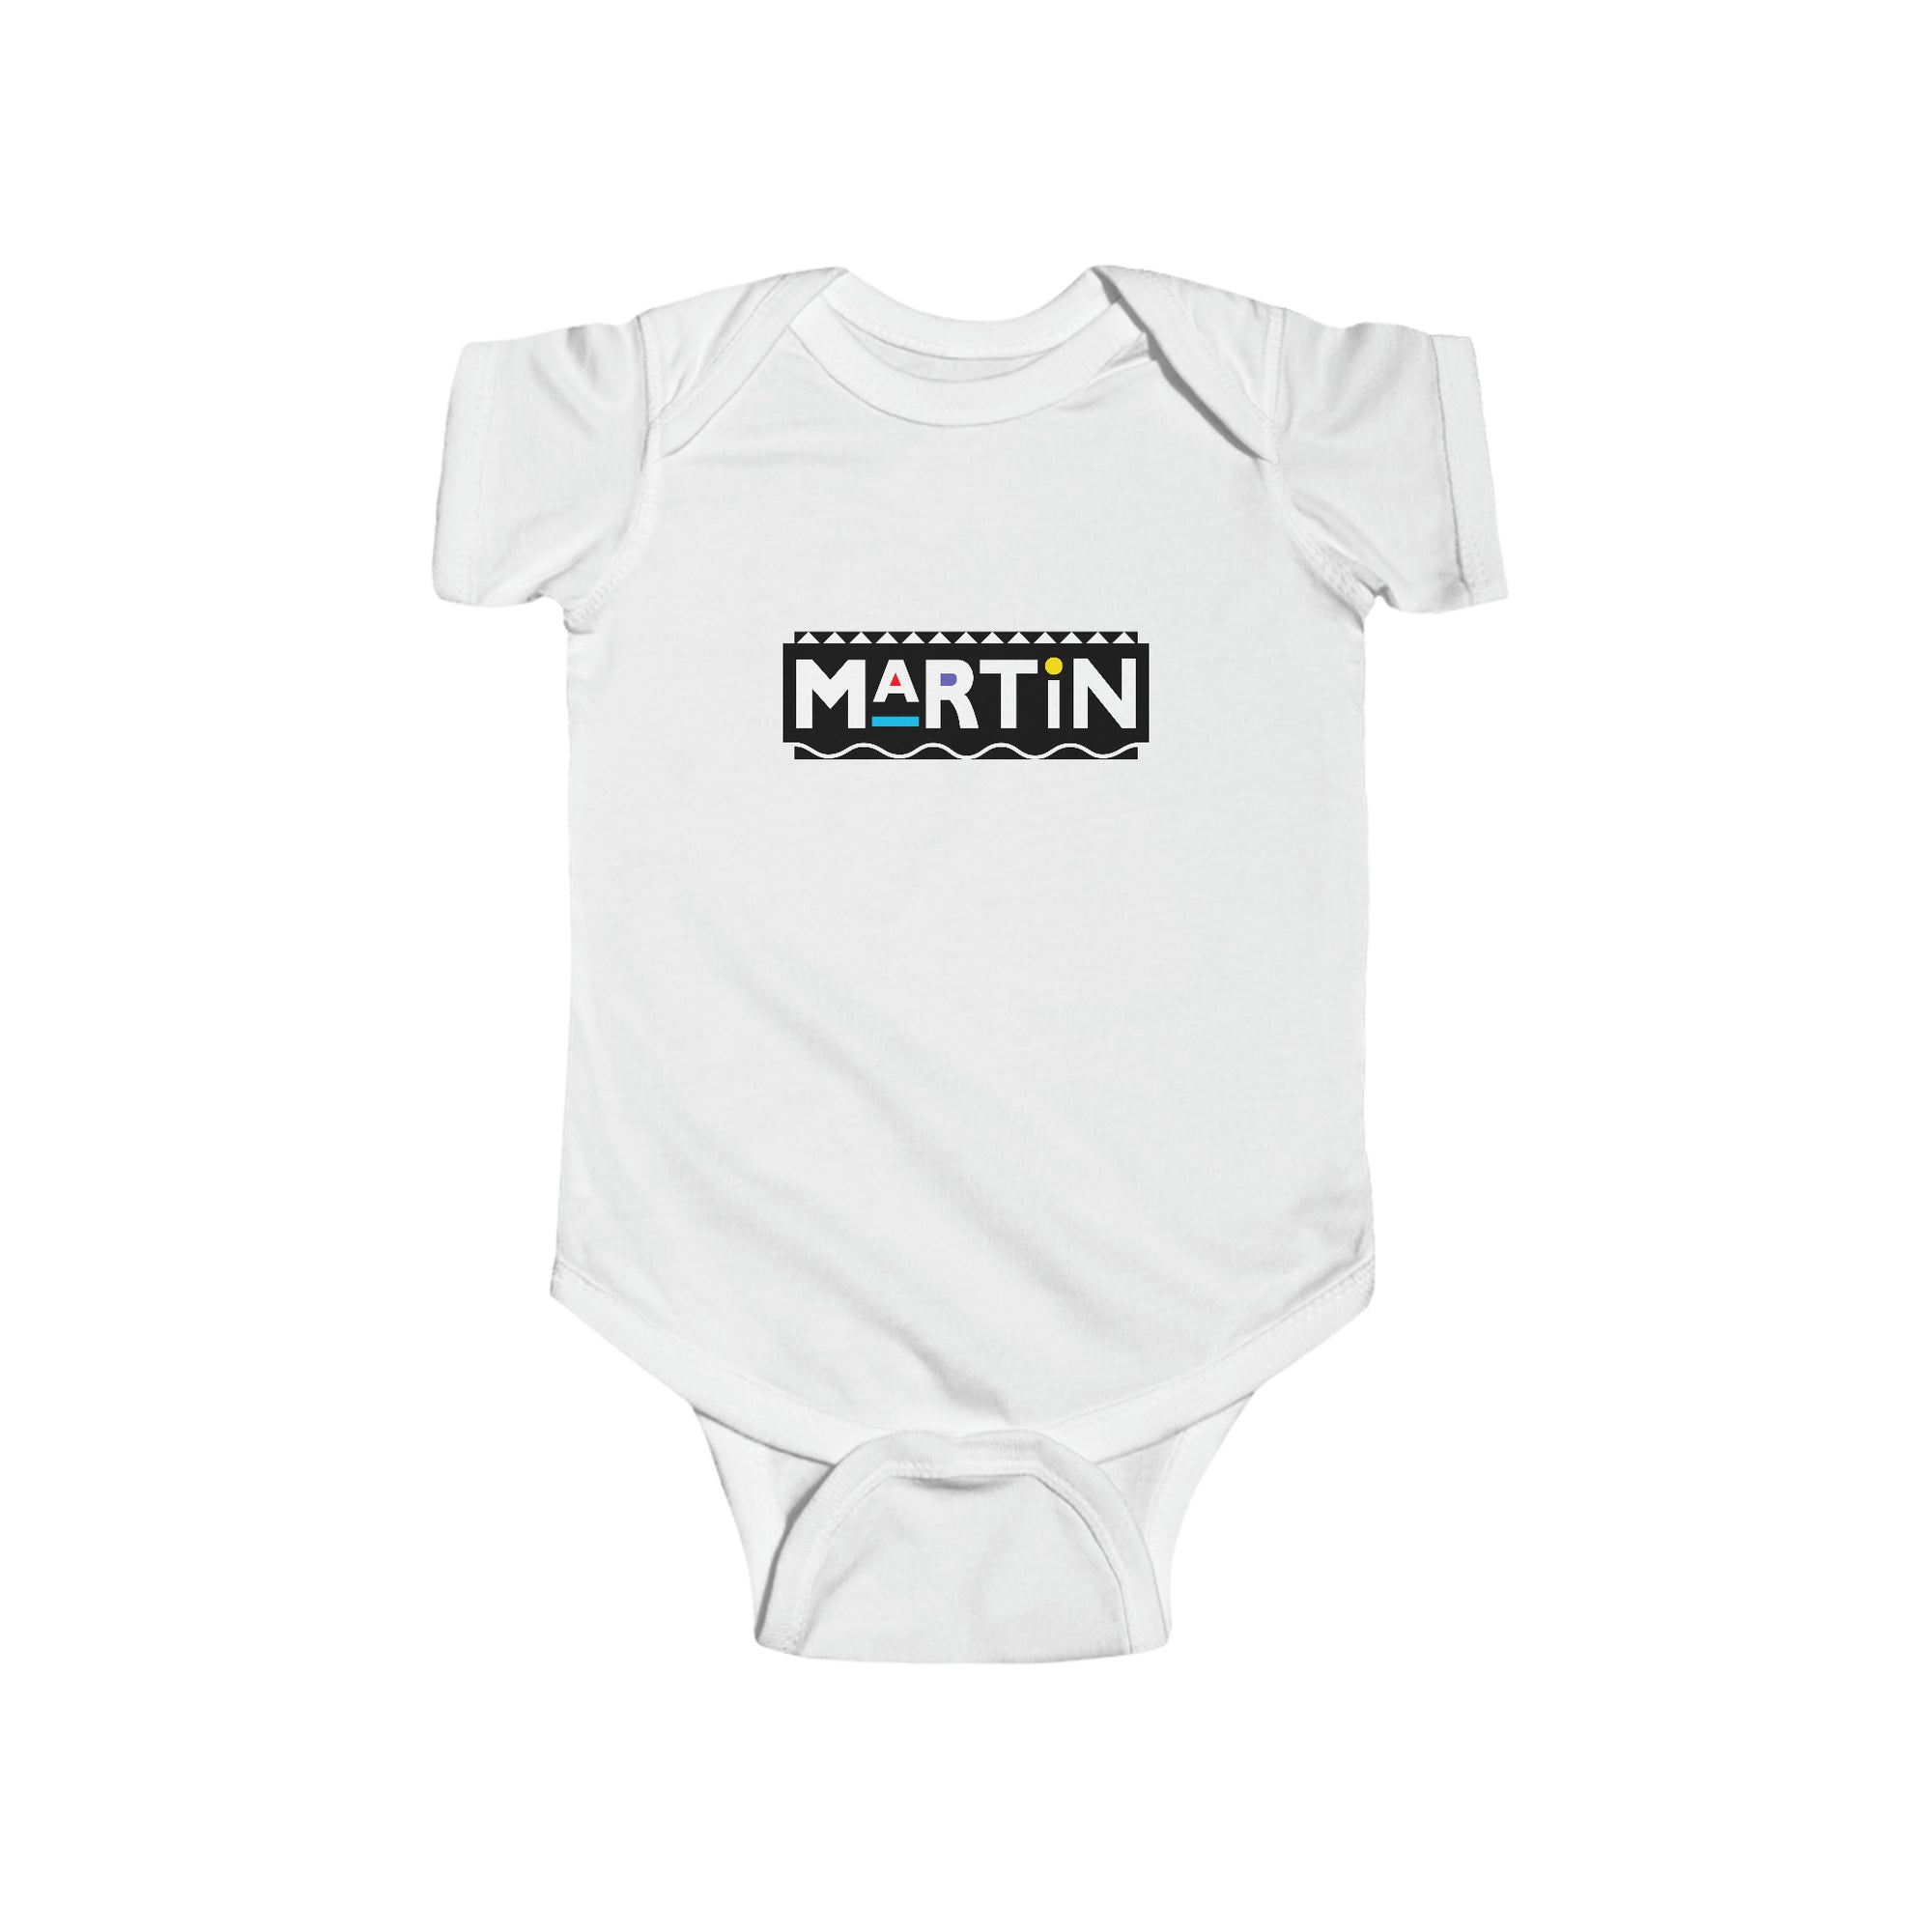 Martin Logo Baby Onesie